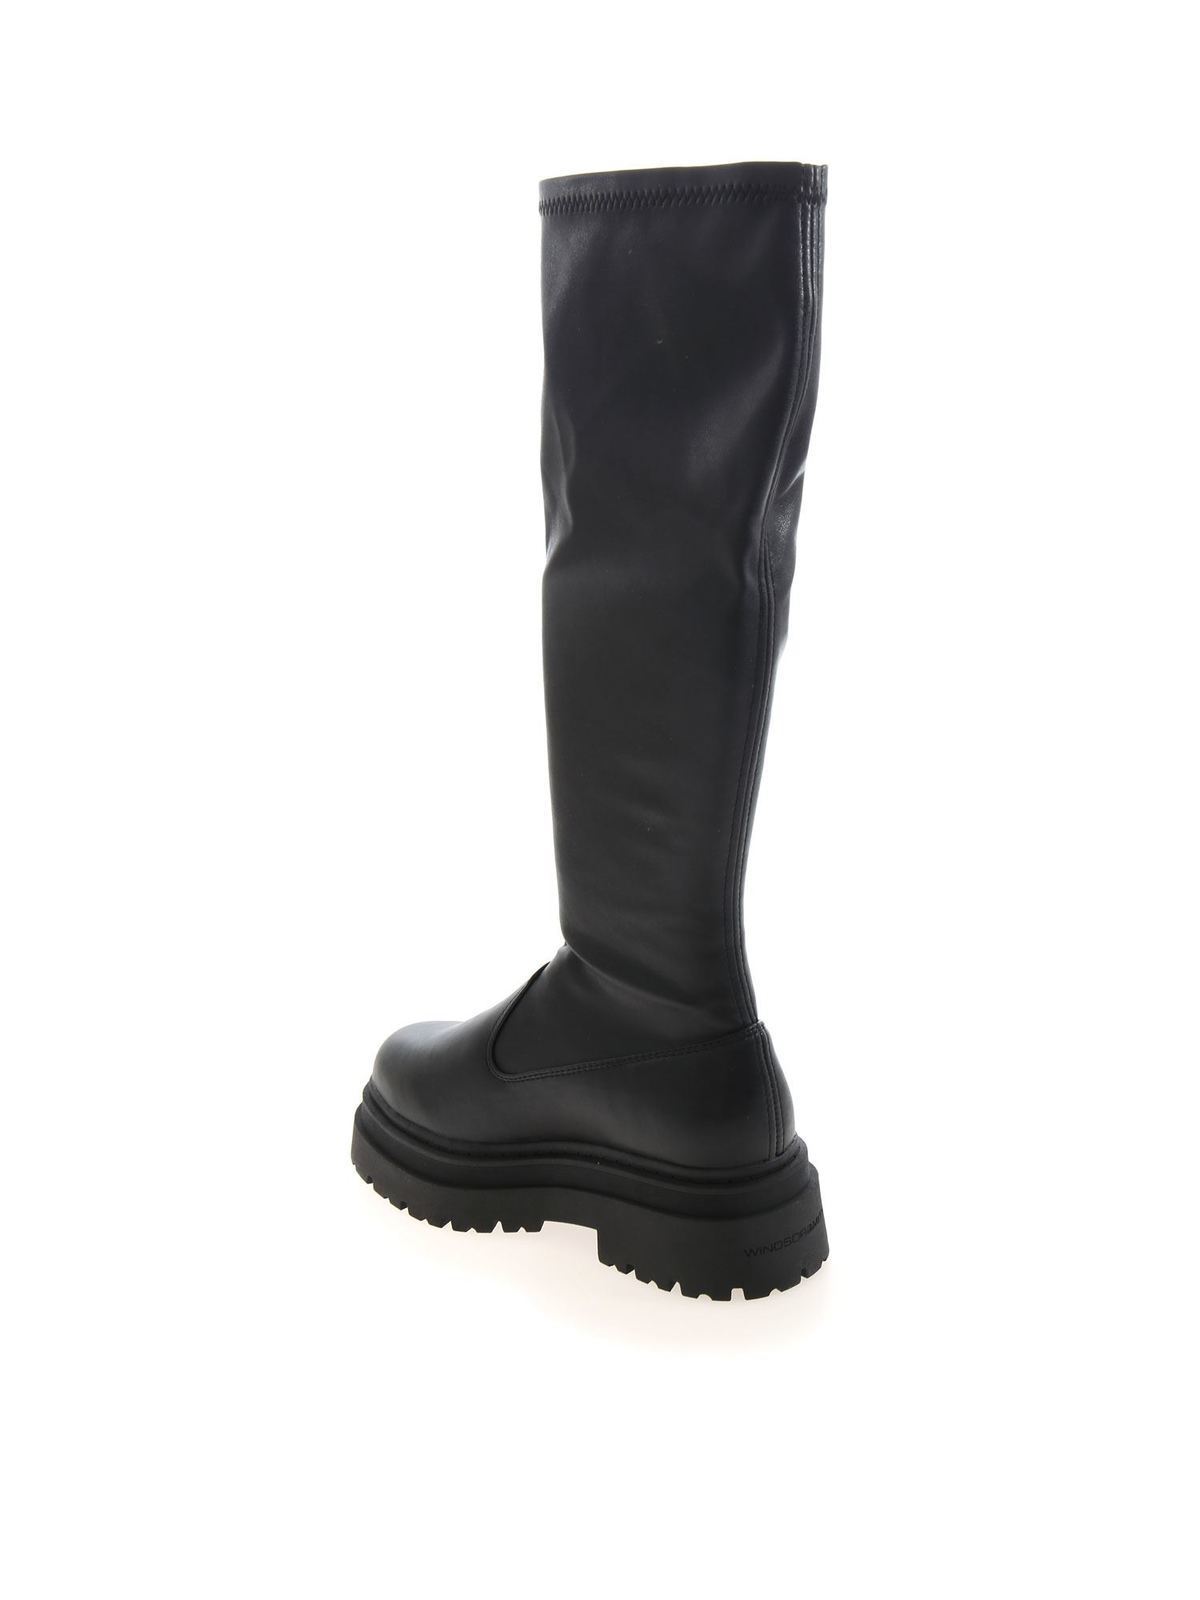 Boots Windsor Smith - Pretend boots in black - PRETENDBLKSTRPU | iKRIX.com